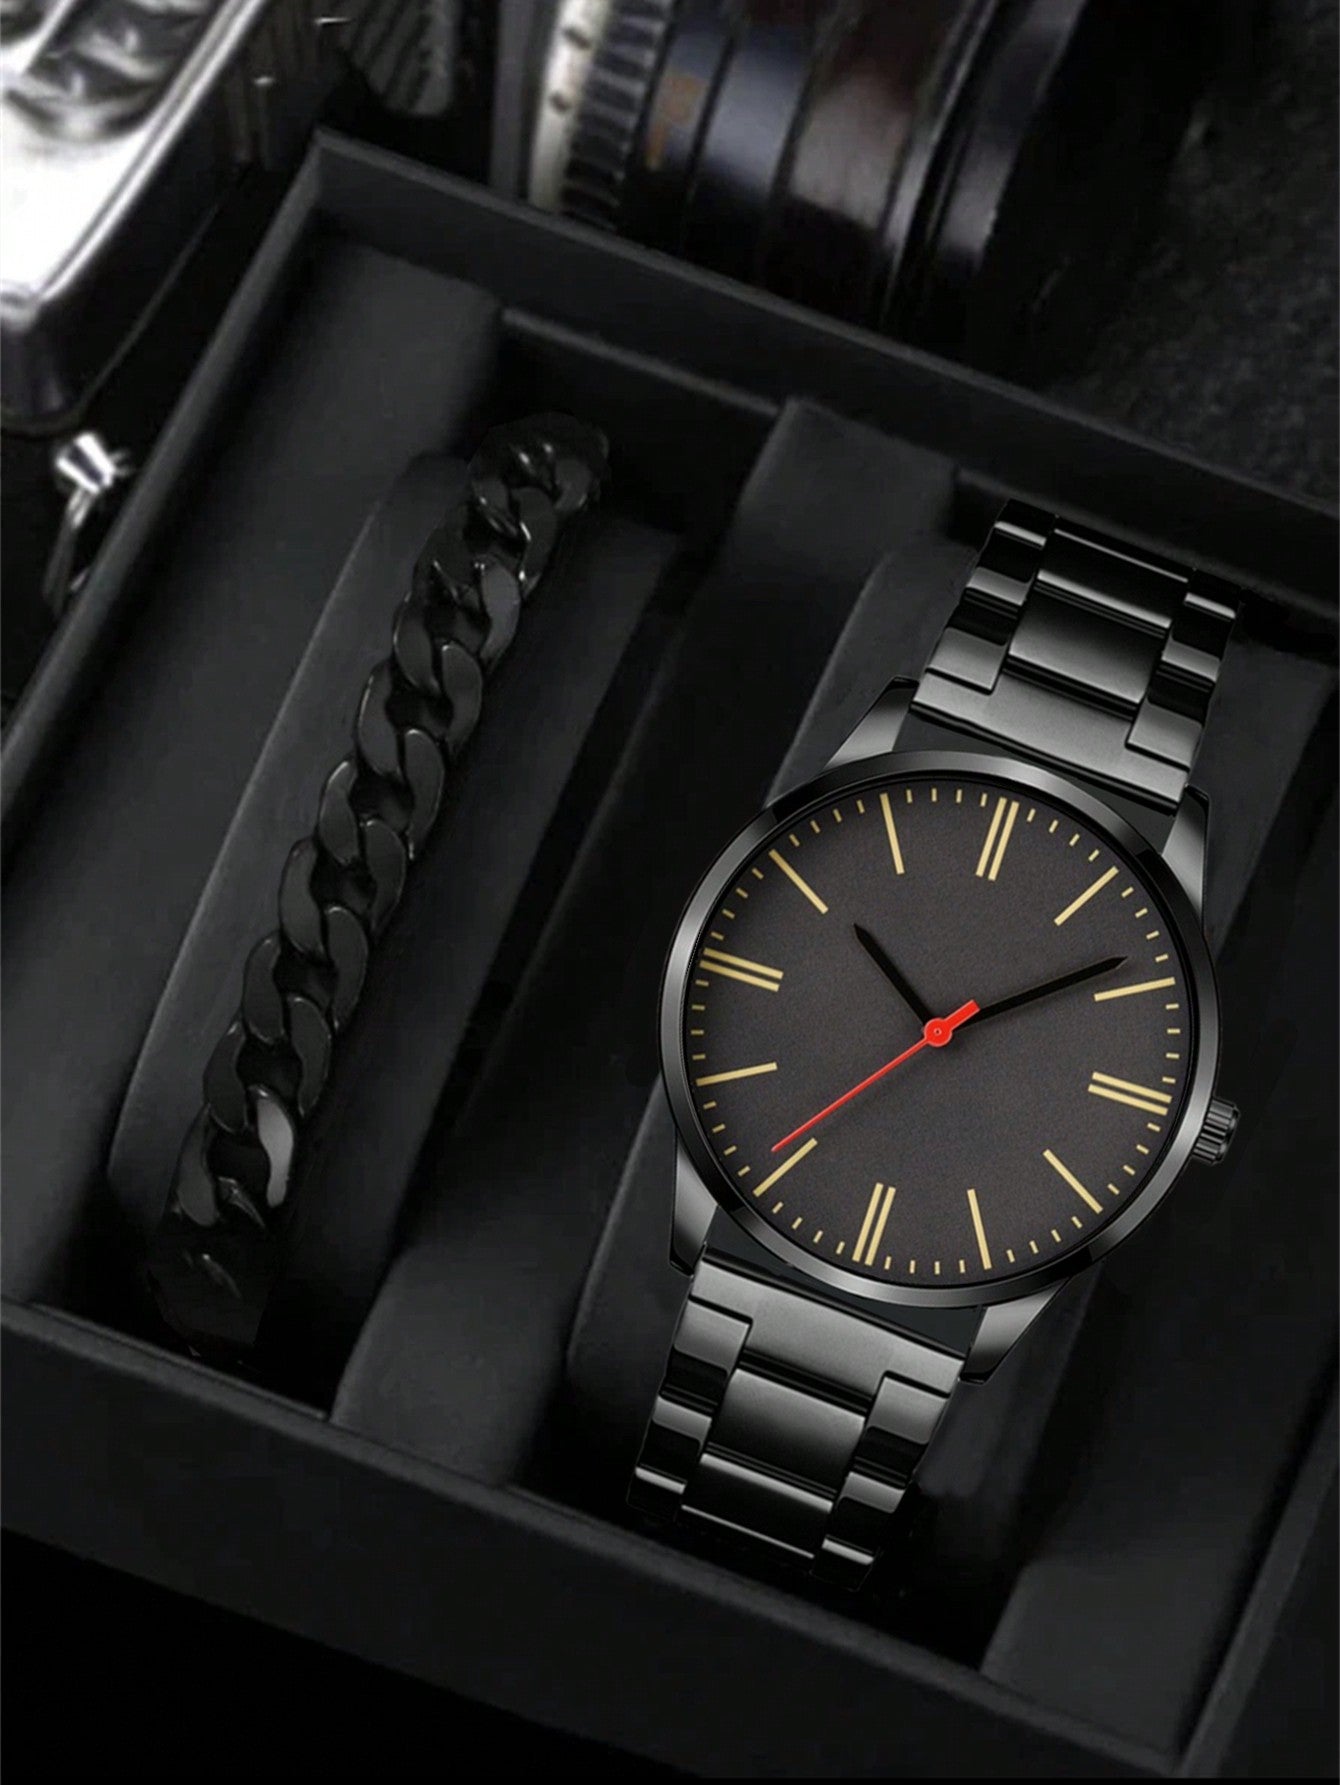 Casual Men's Simple Trendy Sport Quartz Watch Set With 2pcs Watch Bracelets, Suitable For Daily Wear